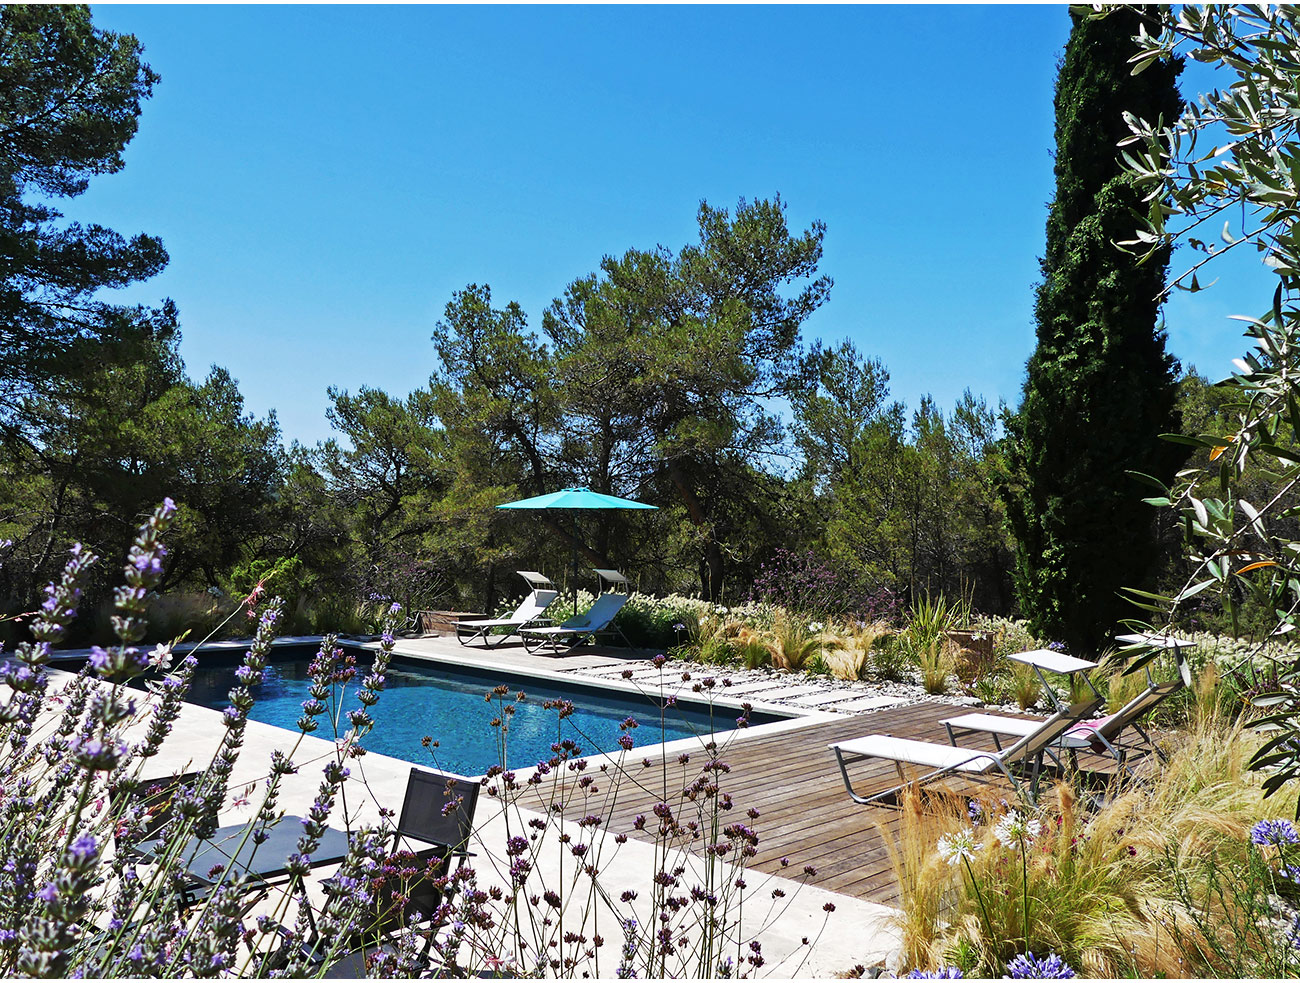 Atelier Naudier - Architecte paysagiste concepteur - Montpellier et Aix en Provence - Jardin de piscine naturel - aménagement jardin